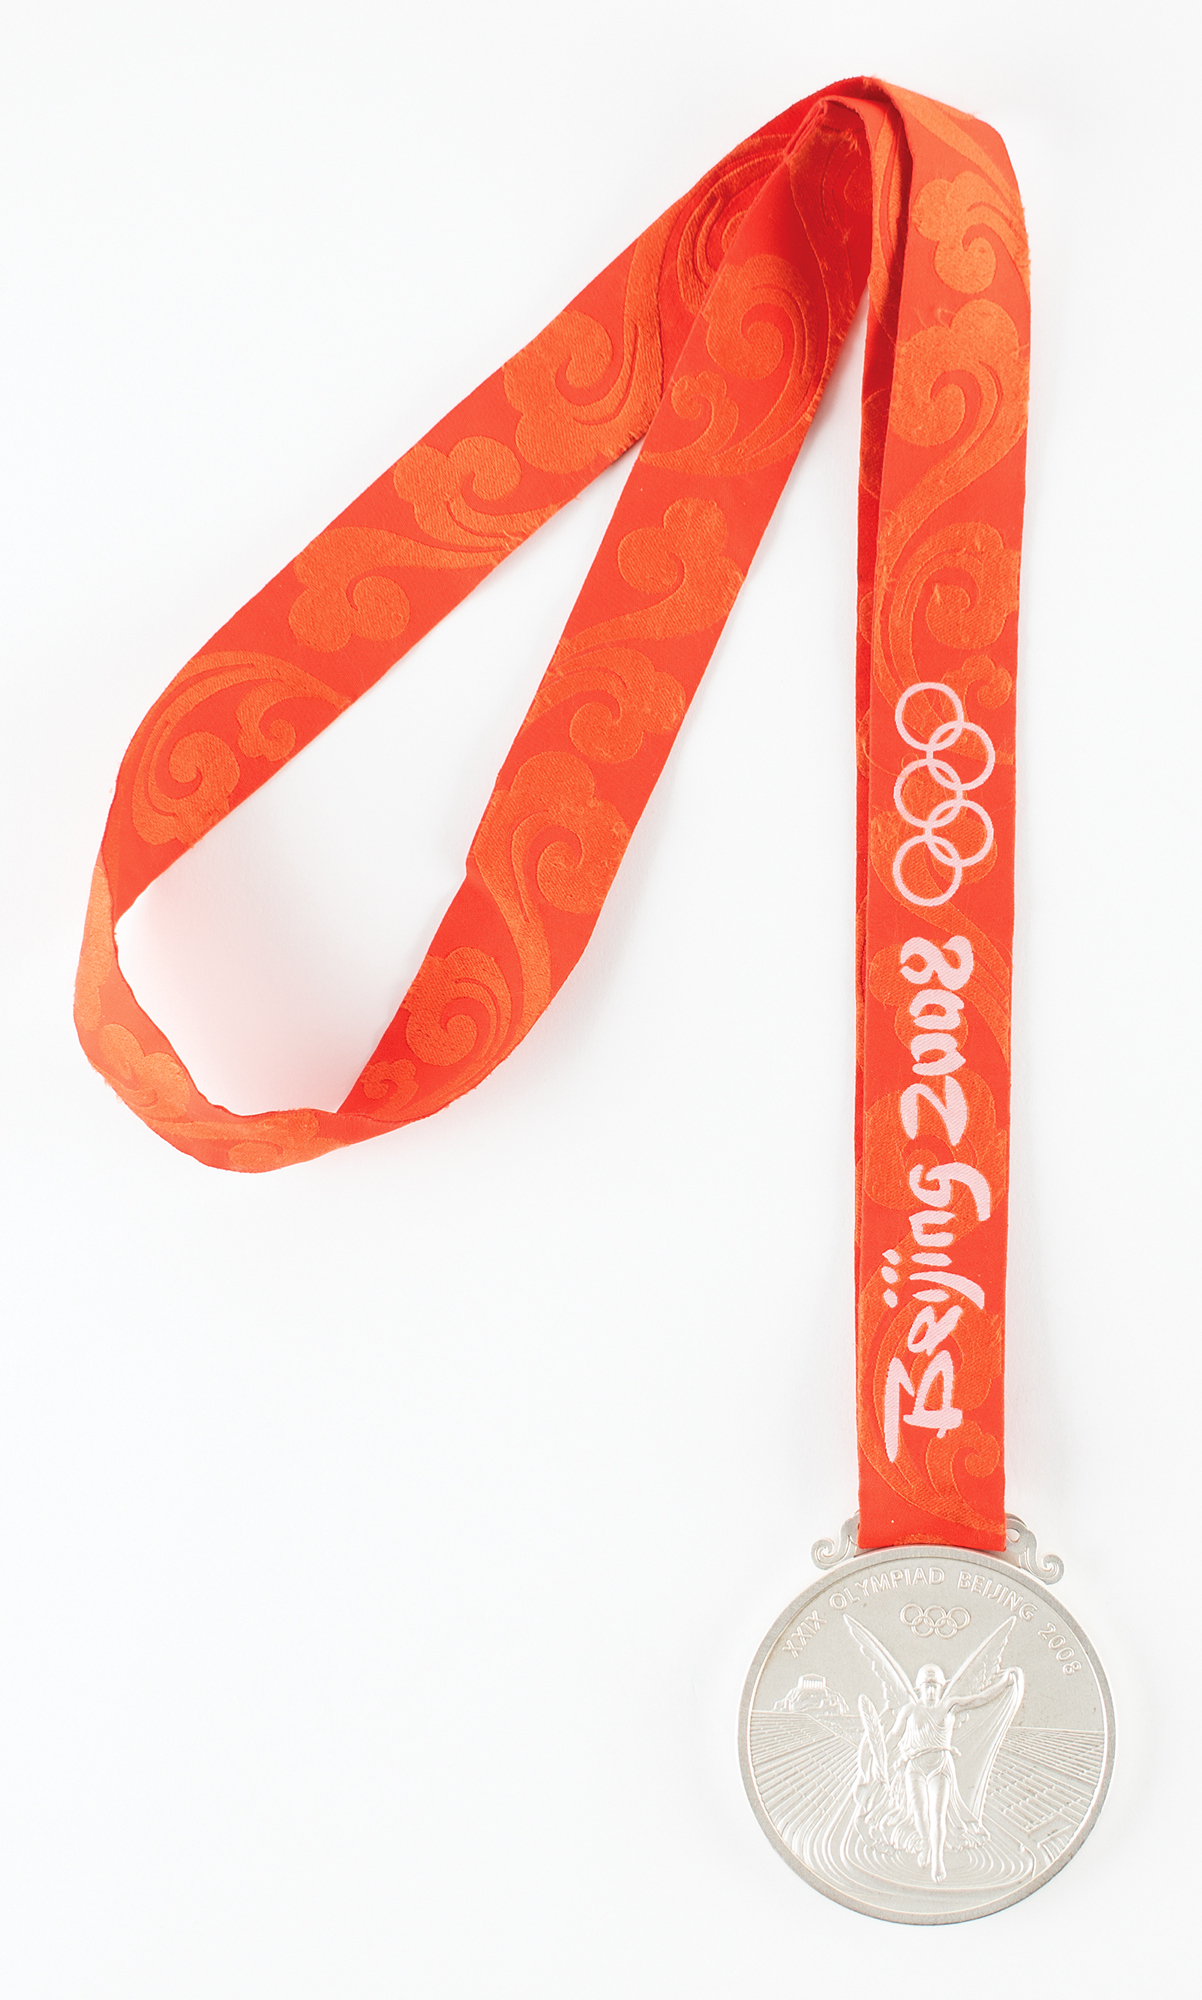 Lot #6160 Beijing 2008 Summer Olympics Silver Winner's Medal